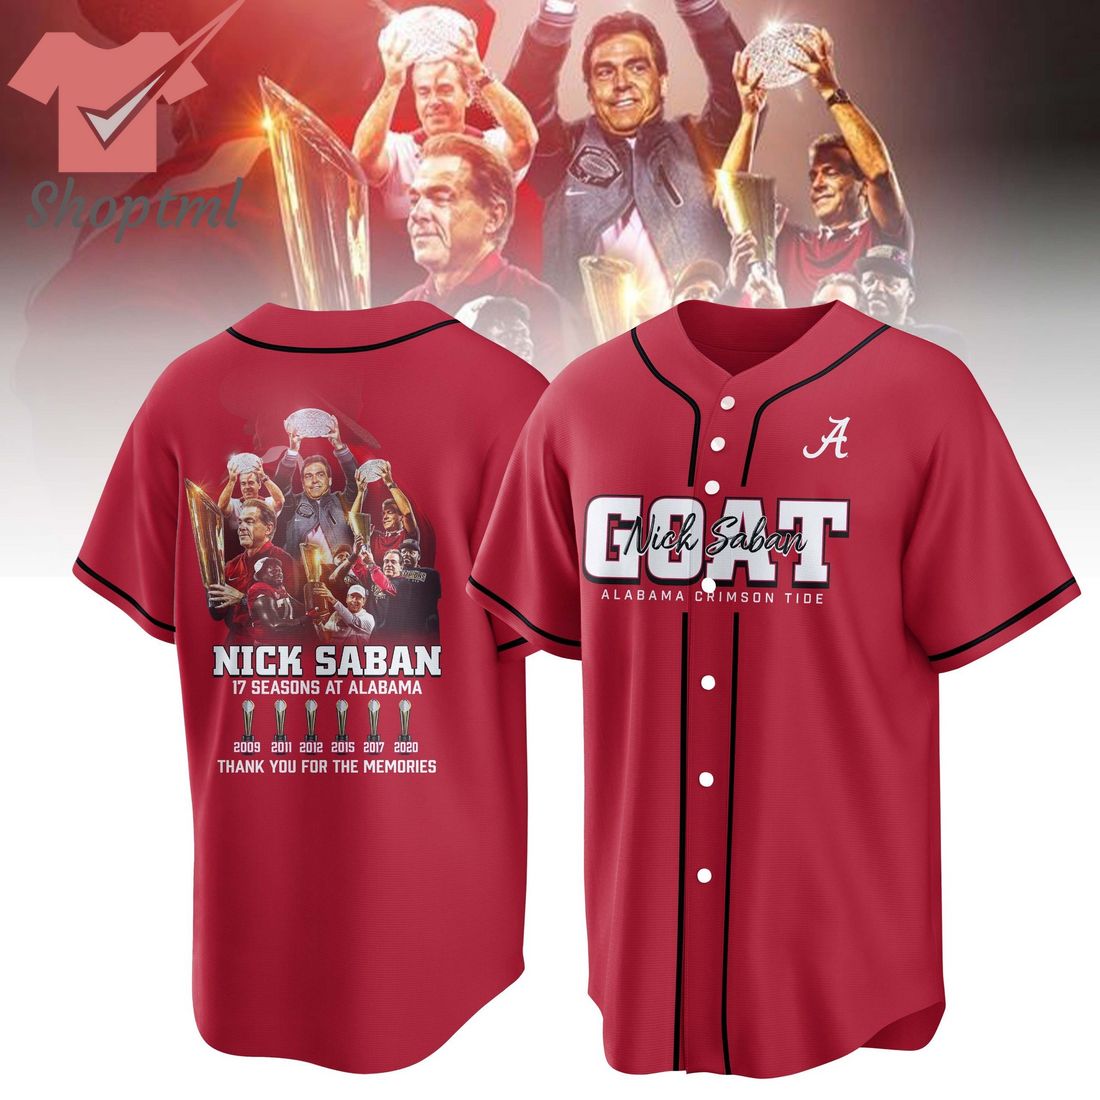 Alabama Crimson Tide Goat Nick Saban Coach Baseball Jersey